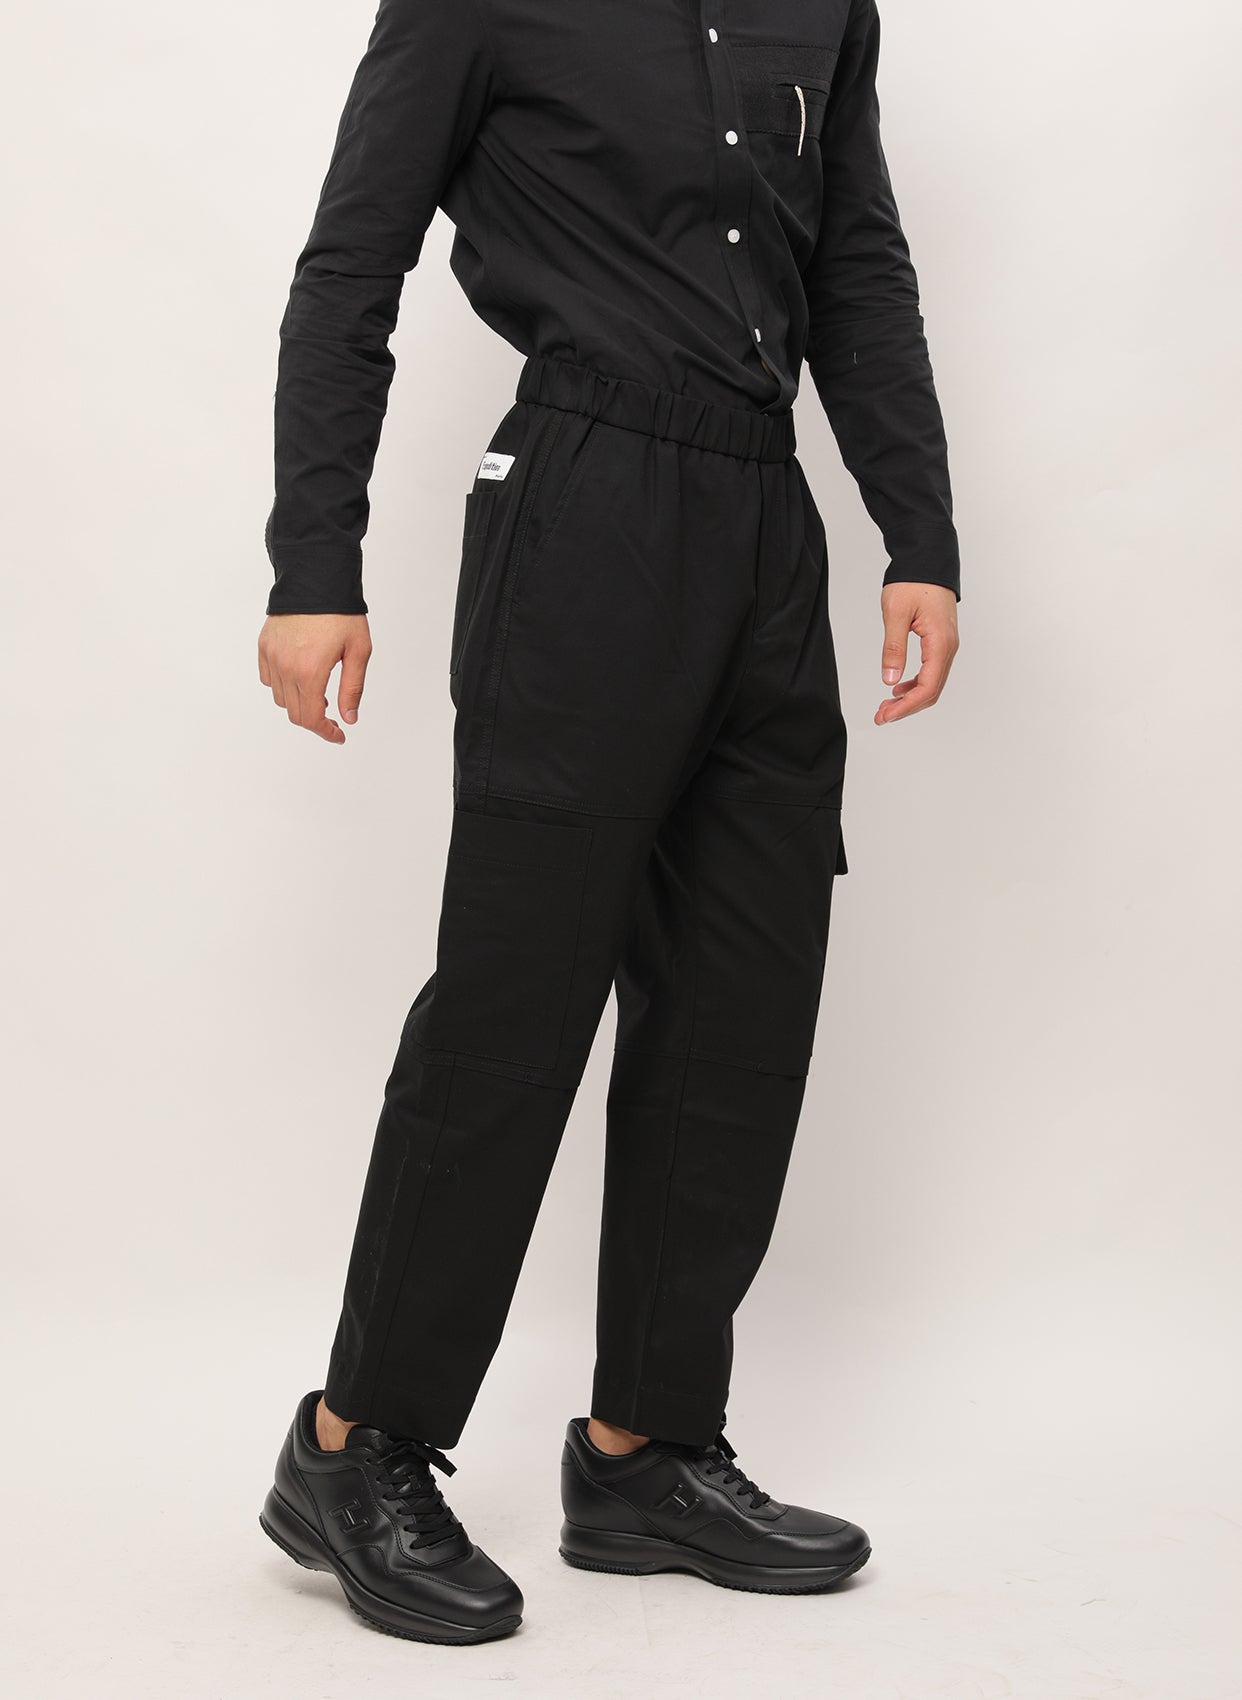 Kenzo Pantolon-Libas Trendy Fashion Store